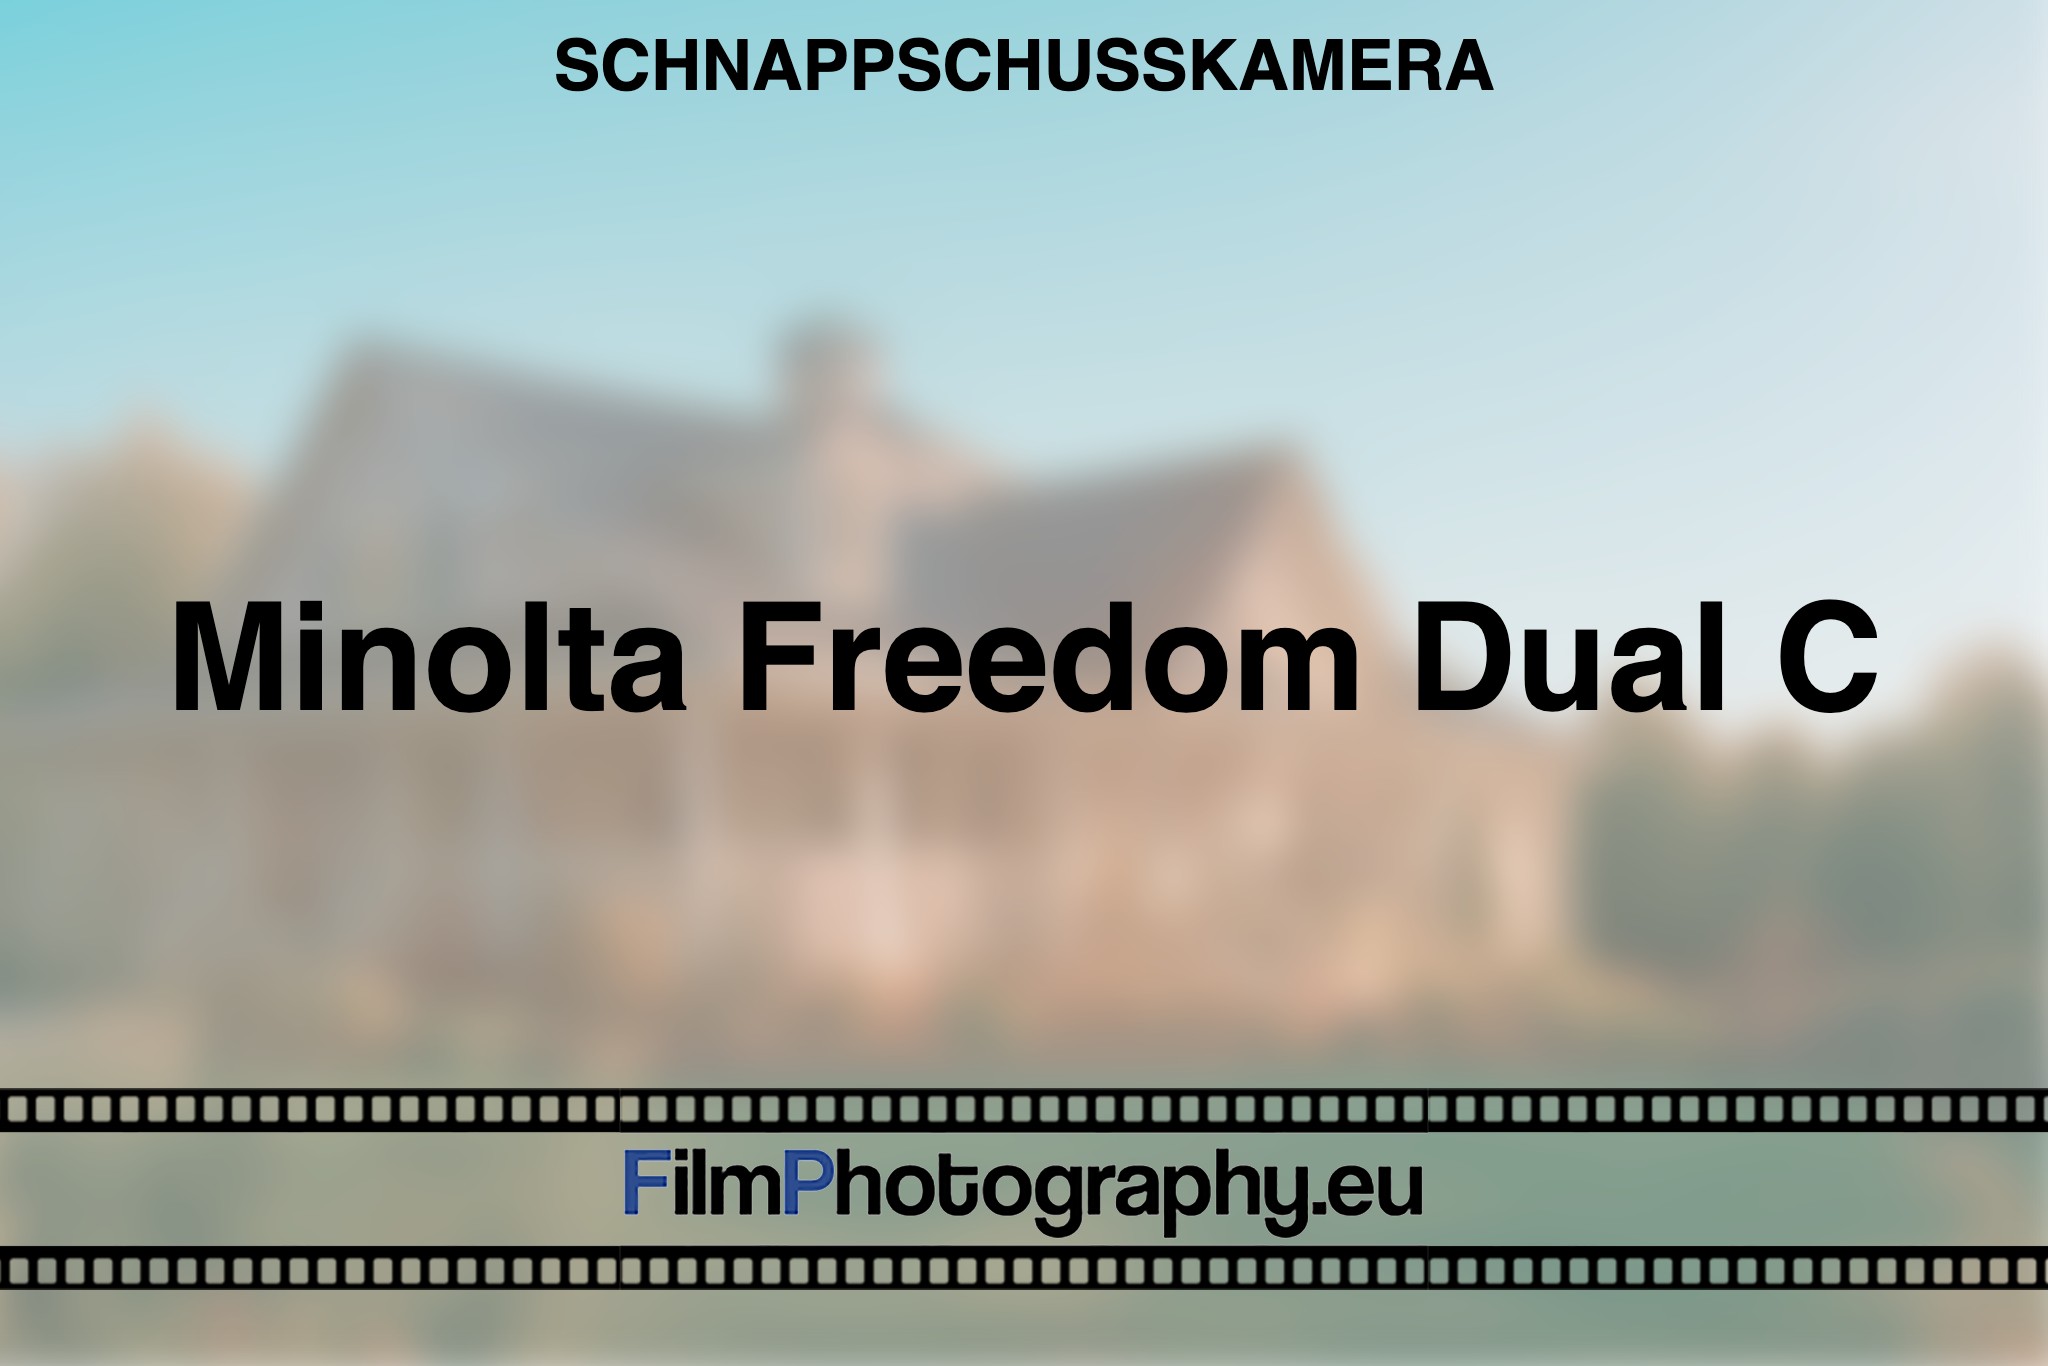 minolta-freedom-dual-c-schnappschusskamera-bnv